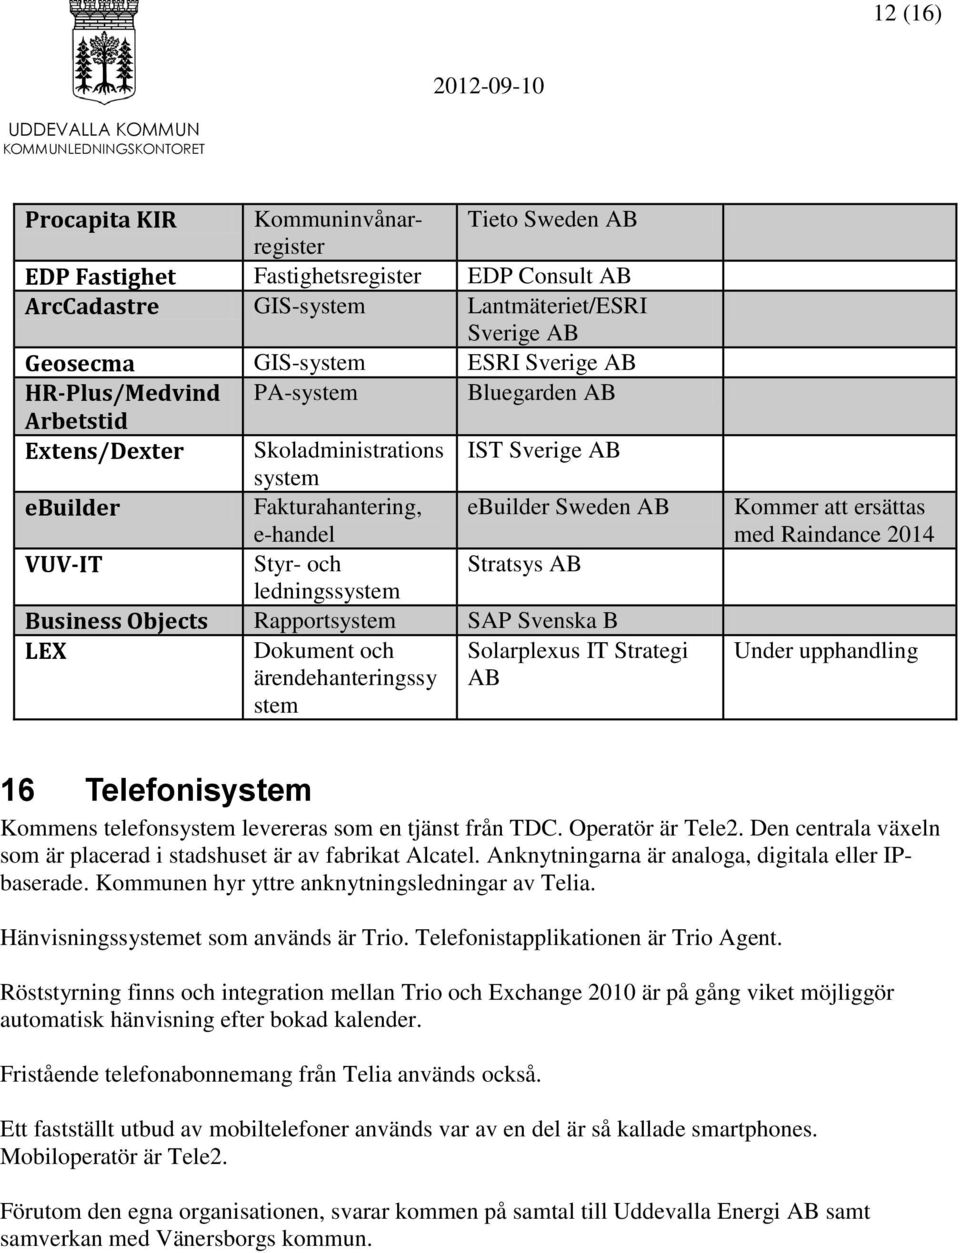 ledningssystem Business Objects Rapportsystem SAP Svenska B LEX Dokument och Solarplexus IT Strategi ärendehanteringssy AB stem Kommer att ersättas med Raindance 2014 Under upphandling 16